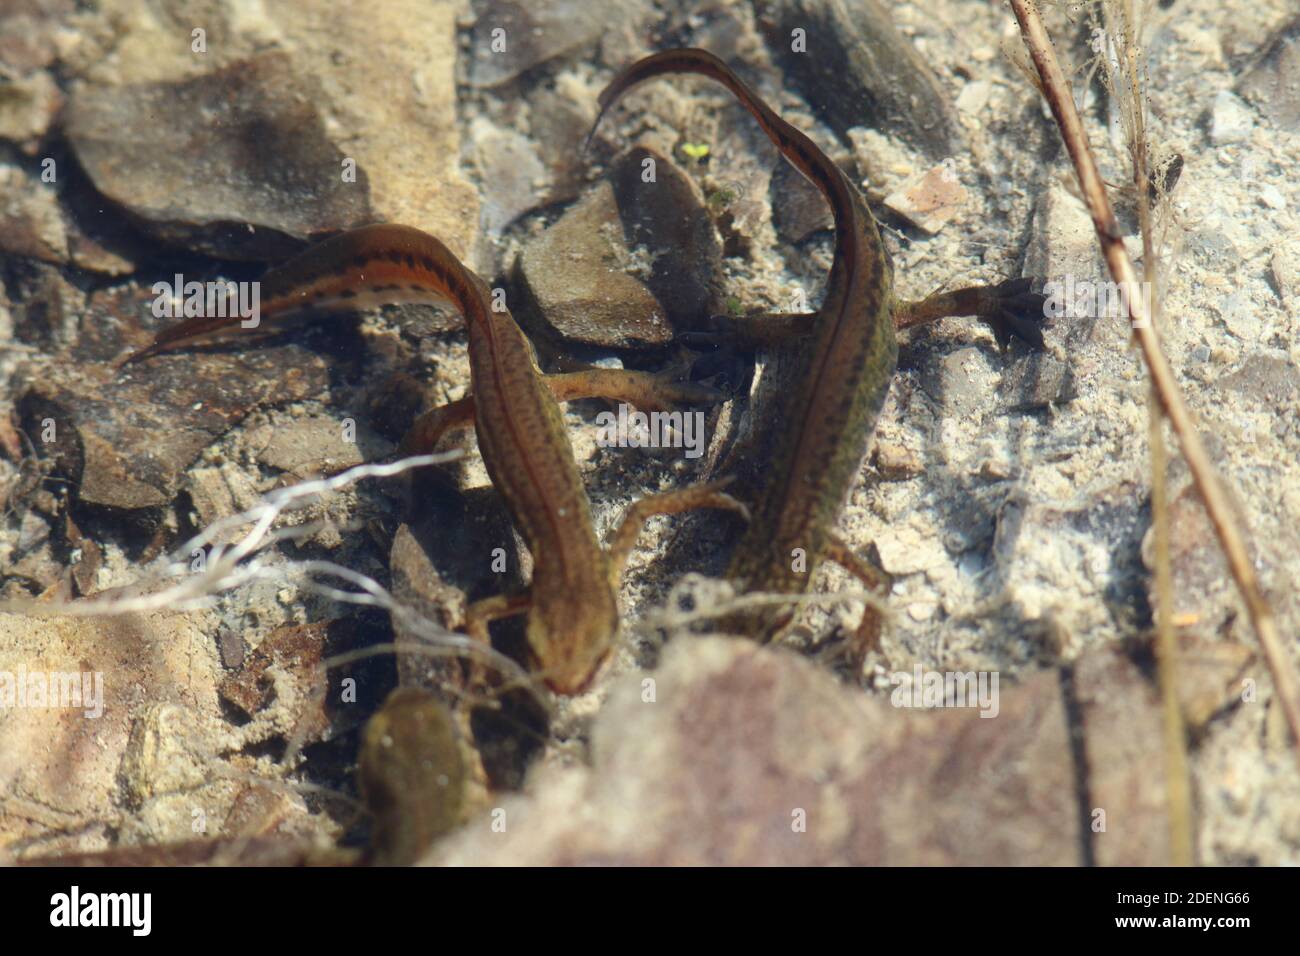 Lissotriton helveticus, Palmate Newt con pies de malla, estos anfibios viven en el agua en gran bretaña para reproducirse. Aquí en una piscina de roca de agua clara o estanque Foto de stock